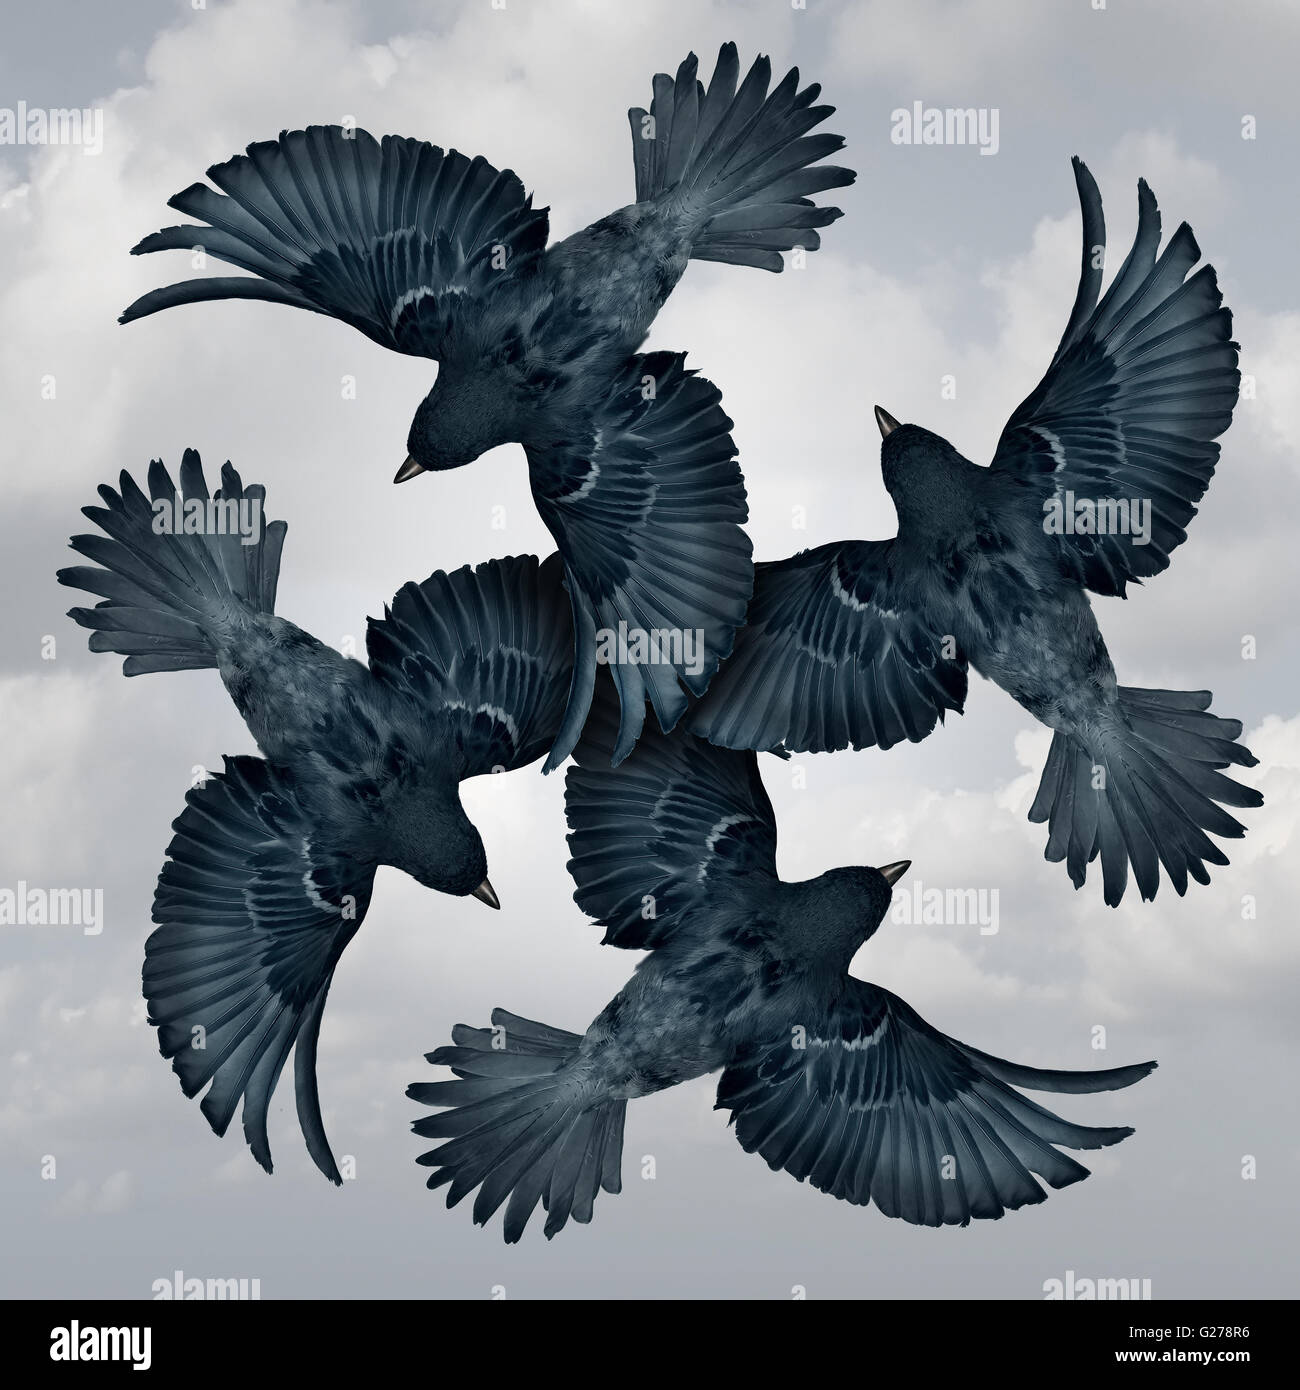 Familie Kreissymbol als eine Gruppe von koordinierte und organisierte Fliegenvögel zusammenfügen Flügel als Metapher für die Freundschaft und Unterstützung als ein Foto realistische Illustration Vertrauen. Stockfoto